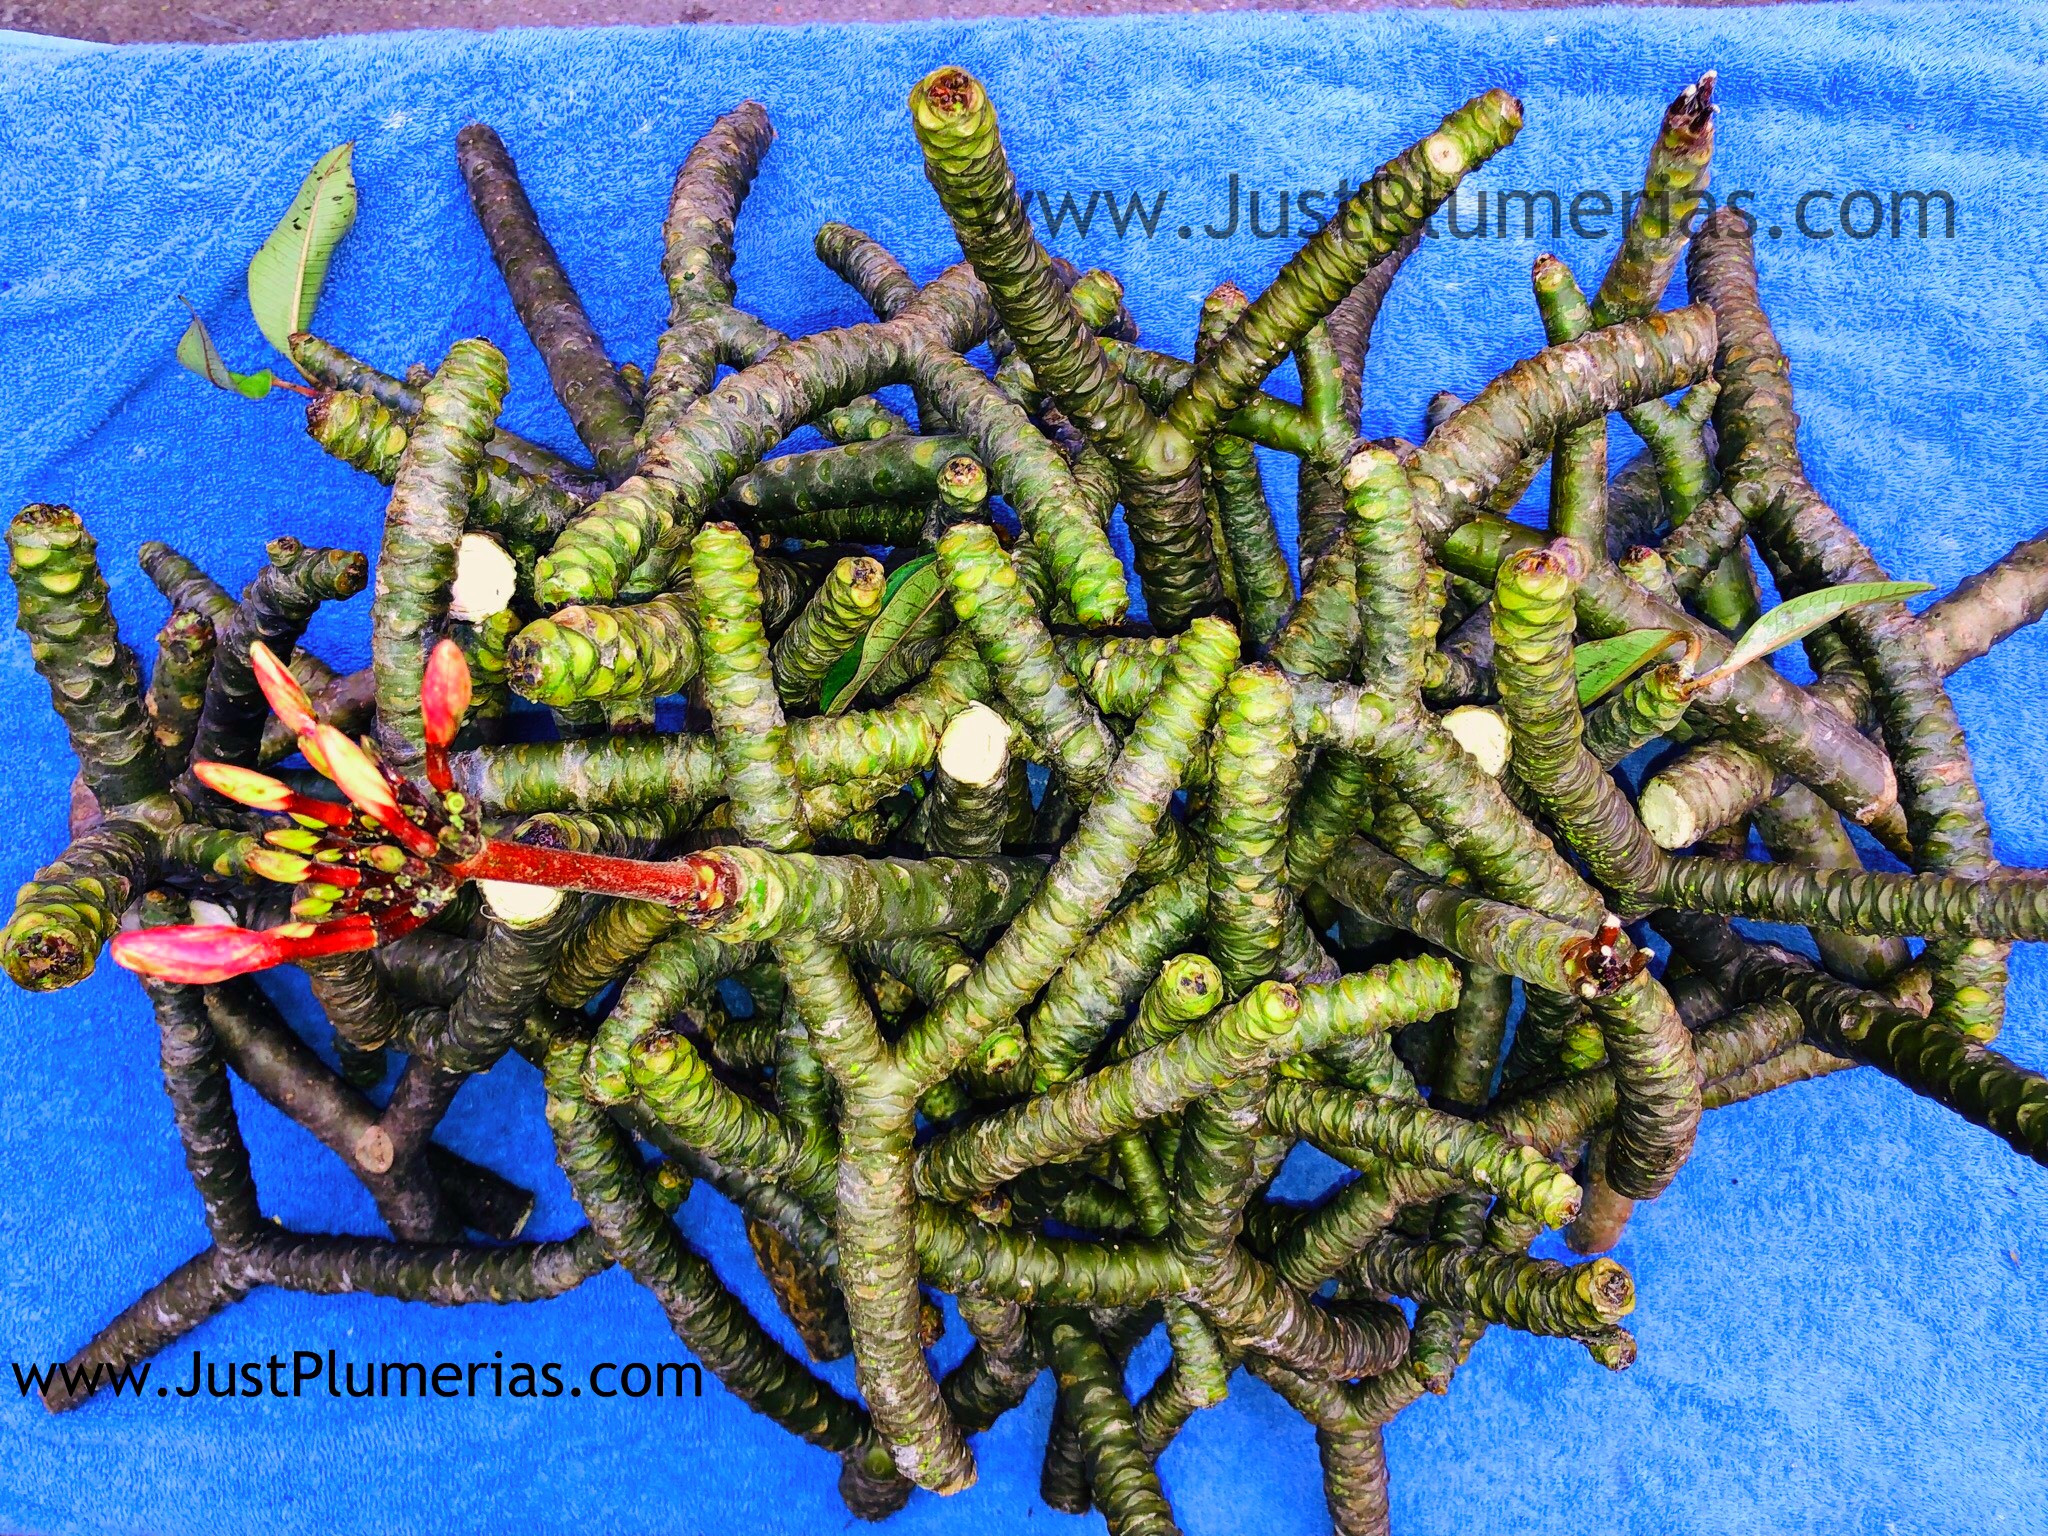 plumeria cuttings for sale Just Plumeria